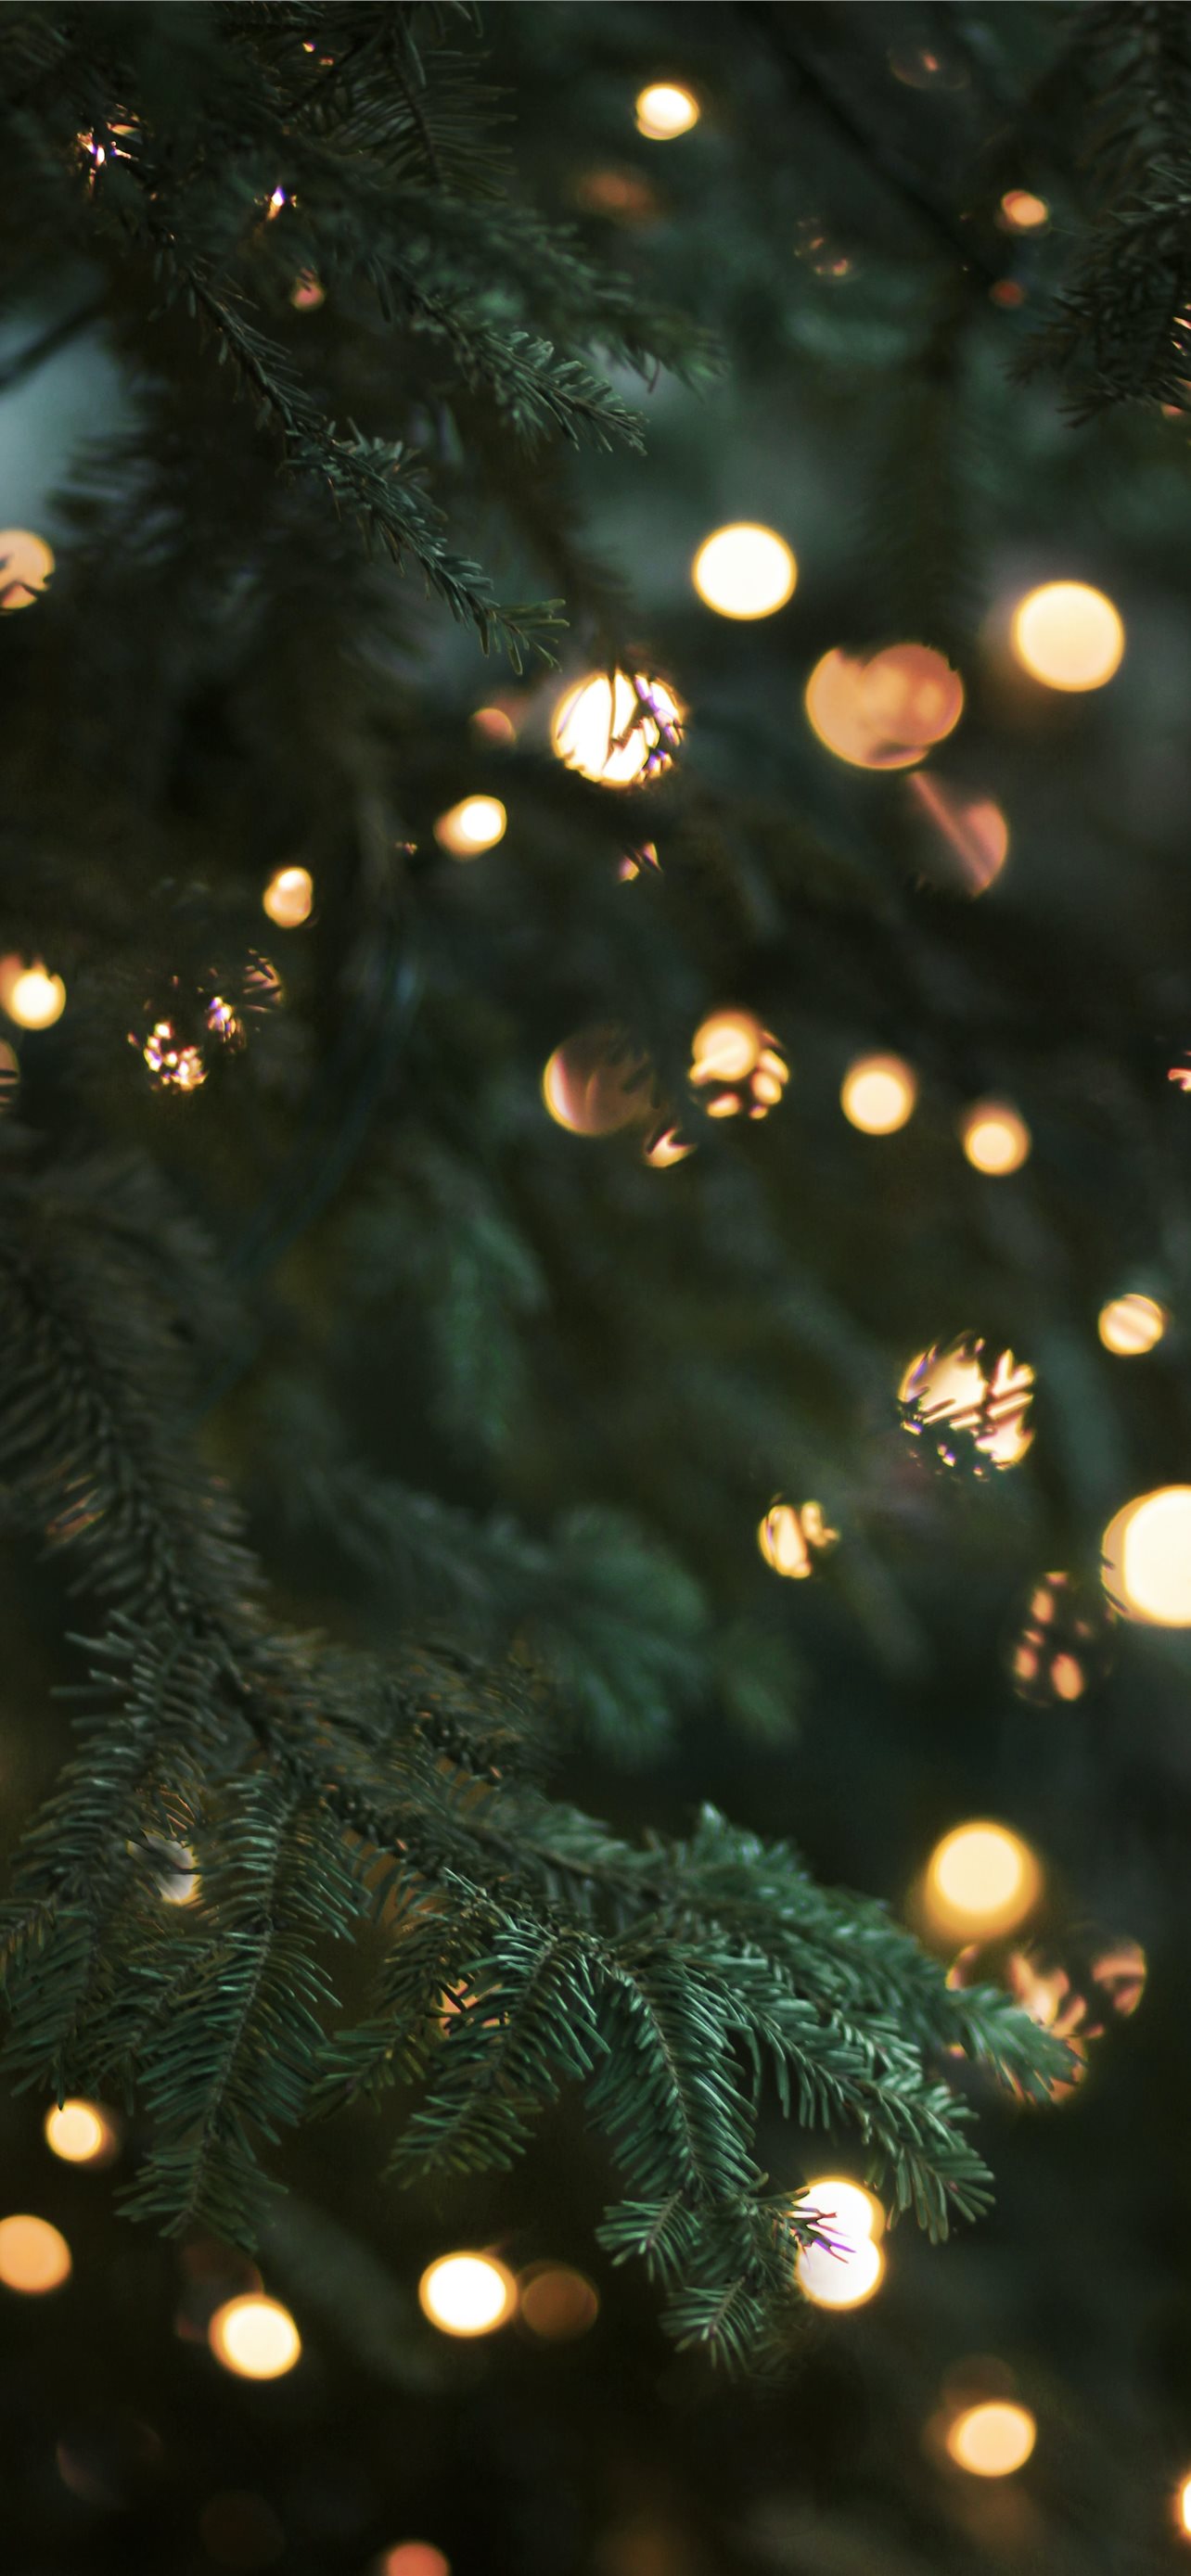 Noel đến rồi, bạn đã chuẩn bị đồ trang trí cho màn hình iPhone của mình chưa? Hãy xem ngay những cây thông Noel xanh với đèn LED hình nền cho iPhone để mang lại không khí lễ hội cho màn hình của bạn nhé. Đảm bảo bạn sẽ rất thích thú!